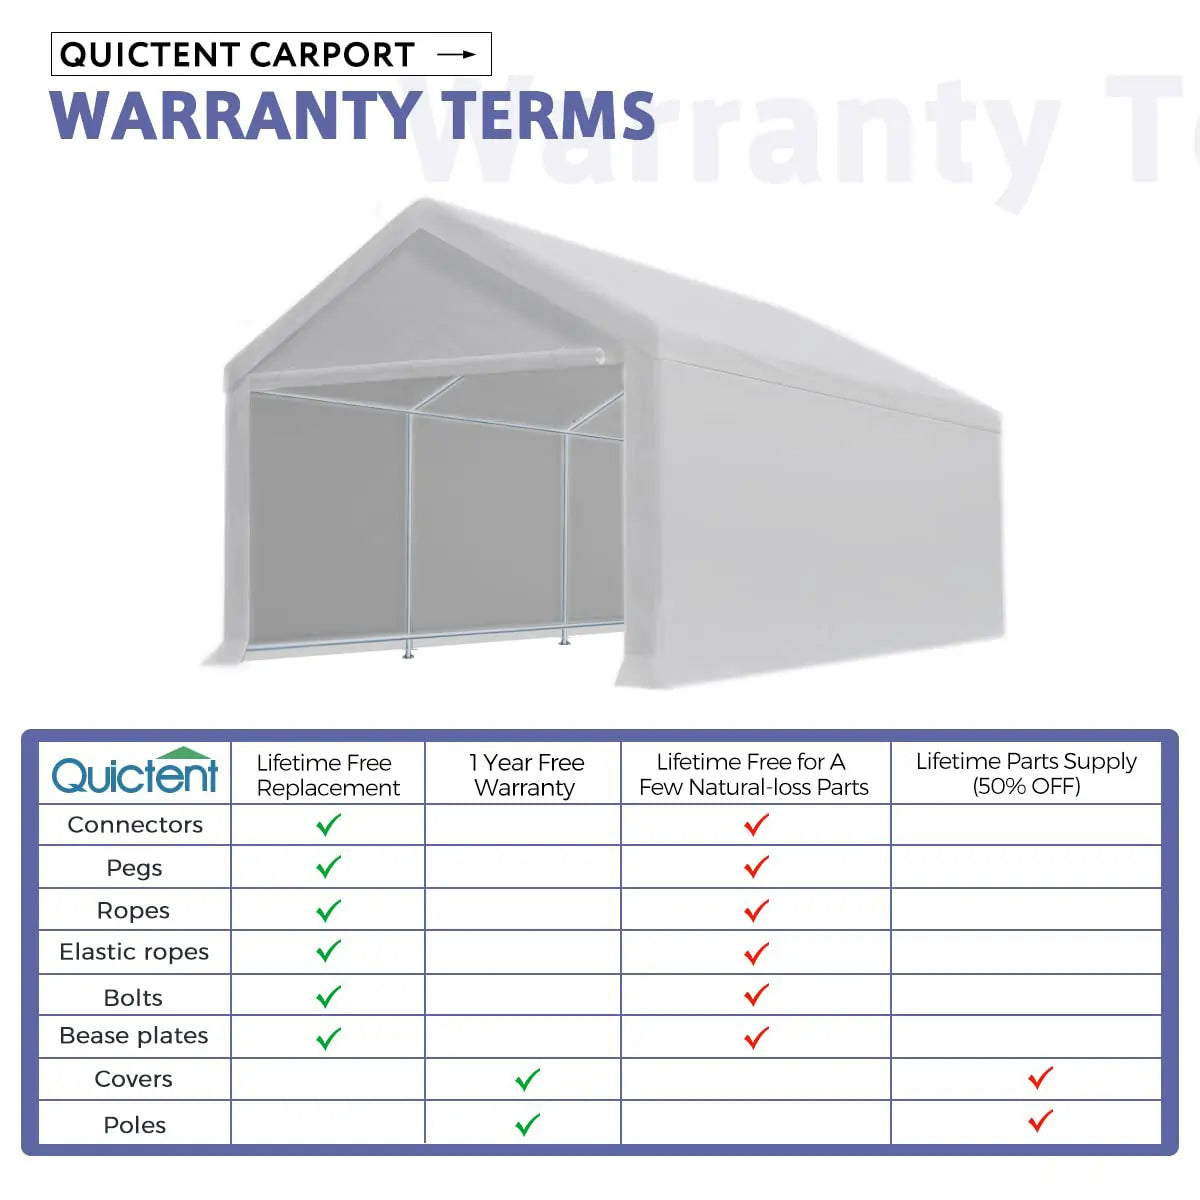 20x13 carport warranty terms#color_gray